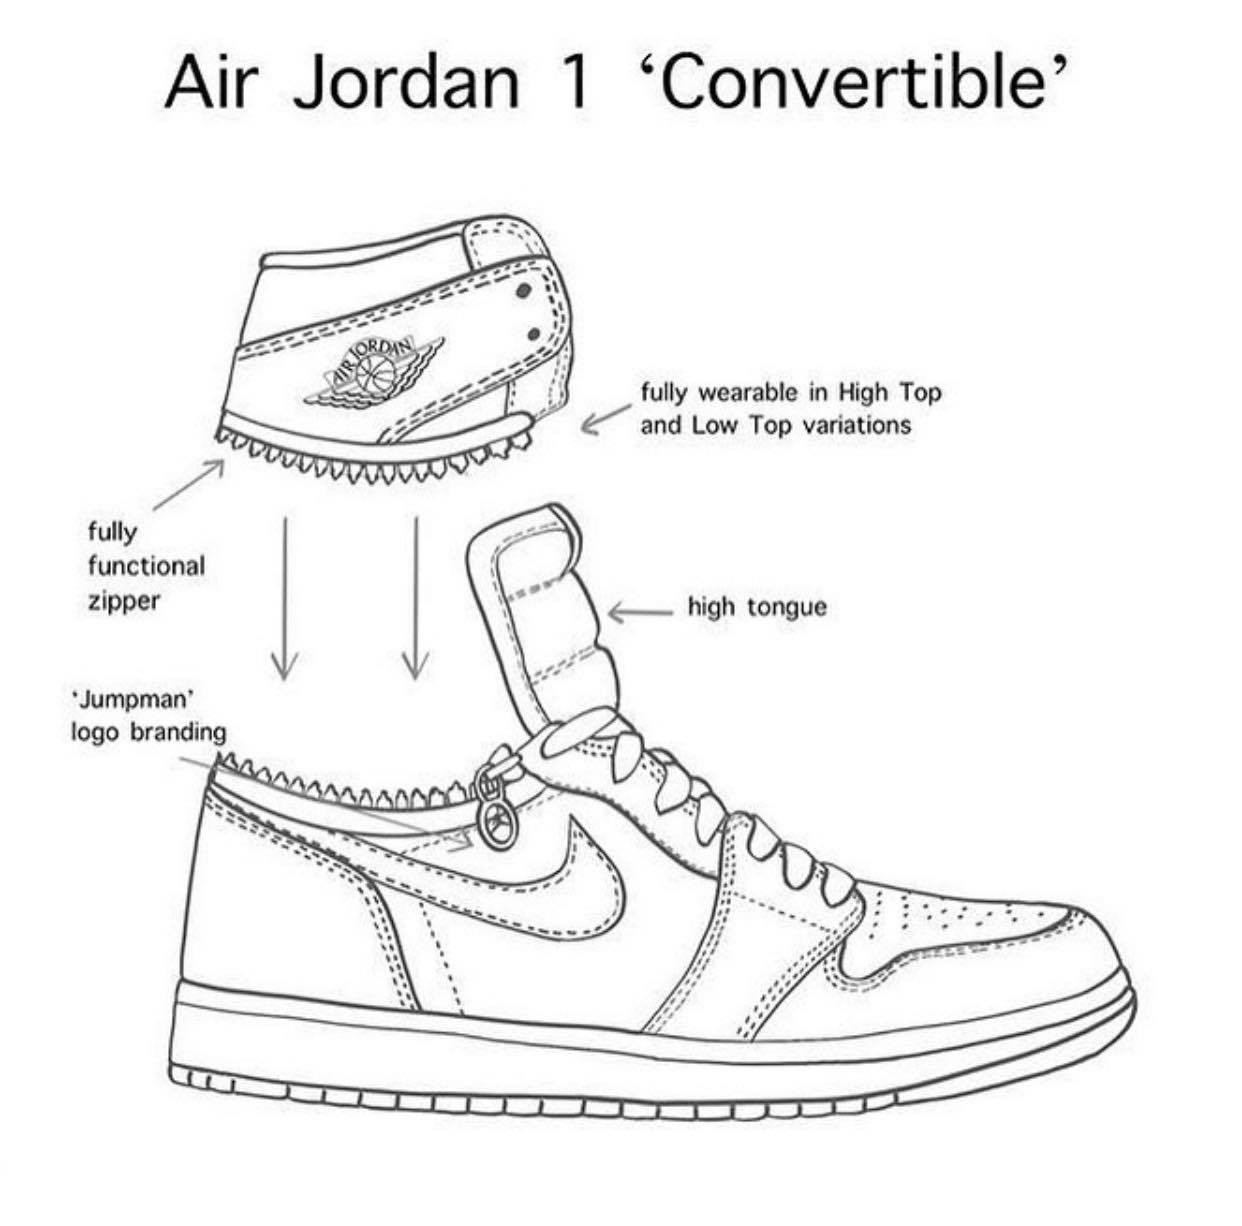 Jordan 1: Không còn xa lạ gì với sneakerhead cả thế giới, đôi giày Jordan 1 là biểu tượng về vẻ đẹp mạnh mẽ và phong cách. Chỉ cần một lần nhìn qua đôi giày này, bạn sẽ ngay lập tức bị cuốn hút bởi sự năng động và cá tính đầy cuốn hút.